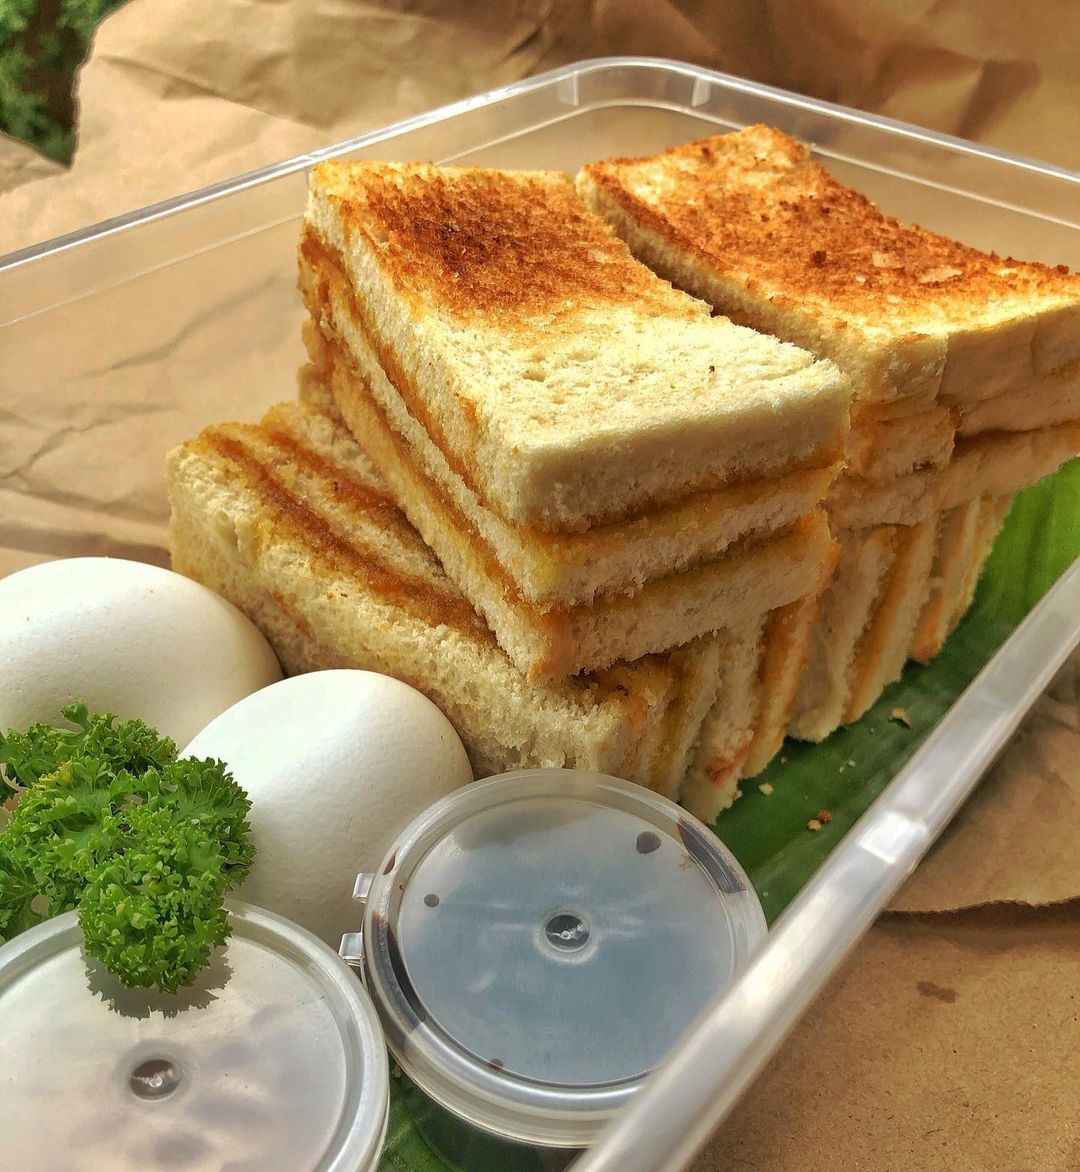 Bugis Singaporean Street Food - kaya toast